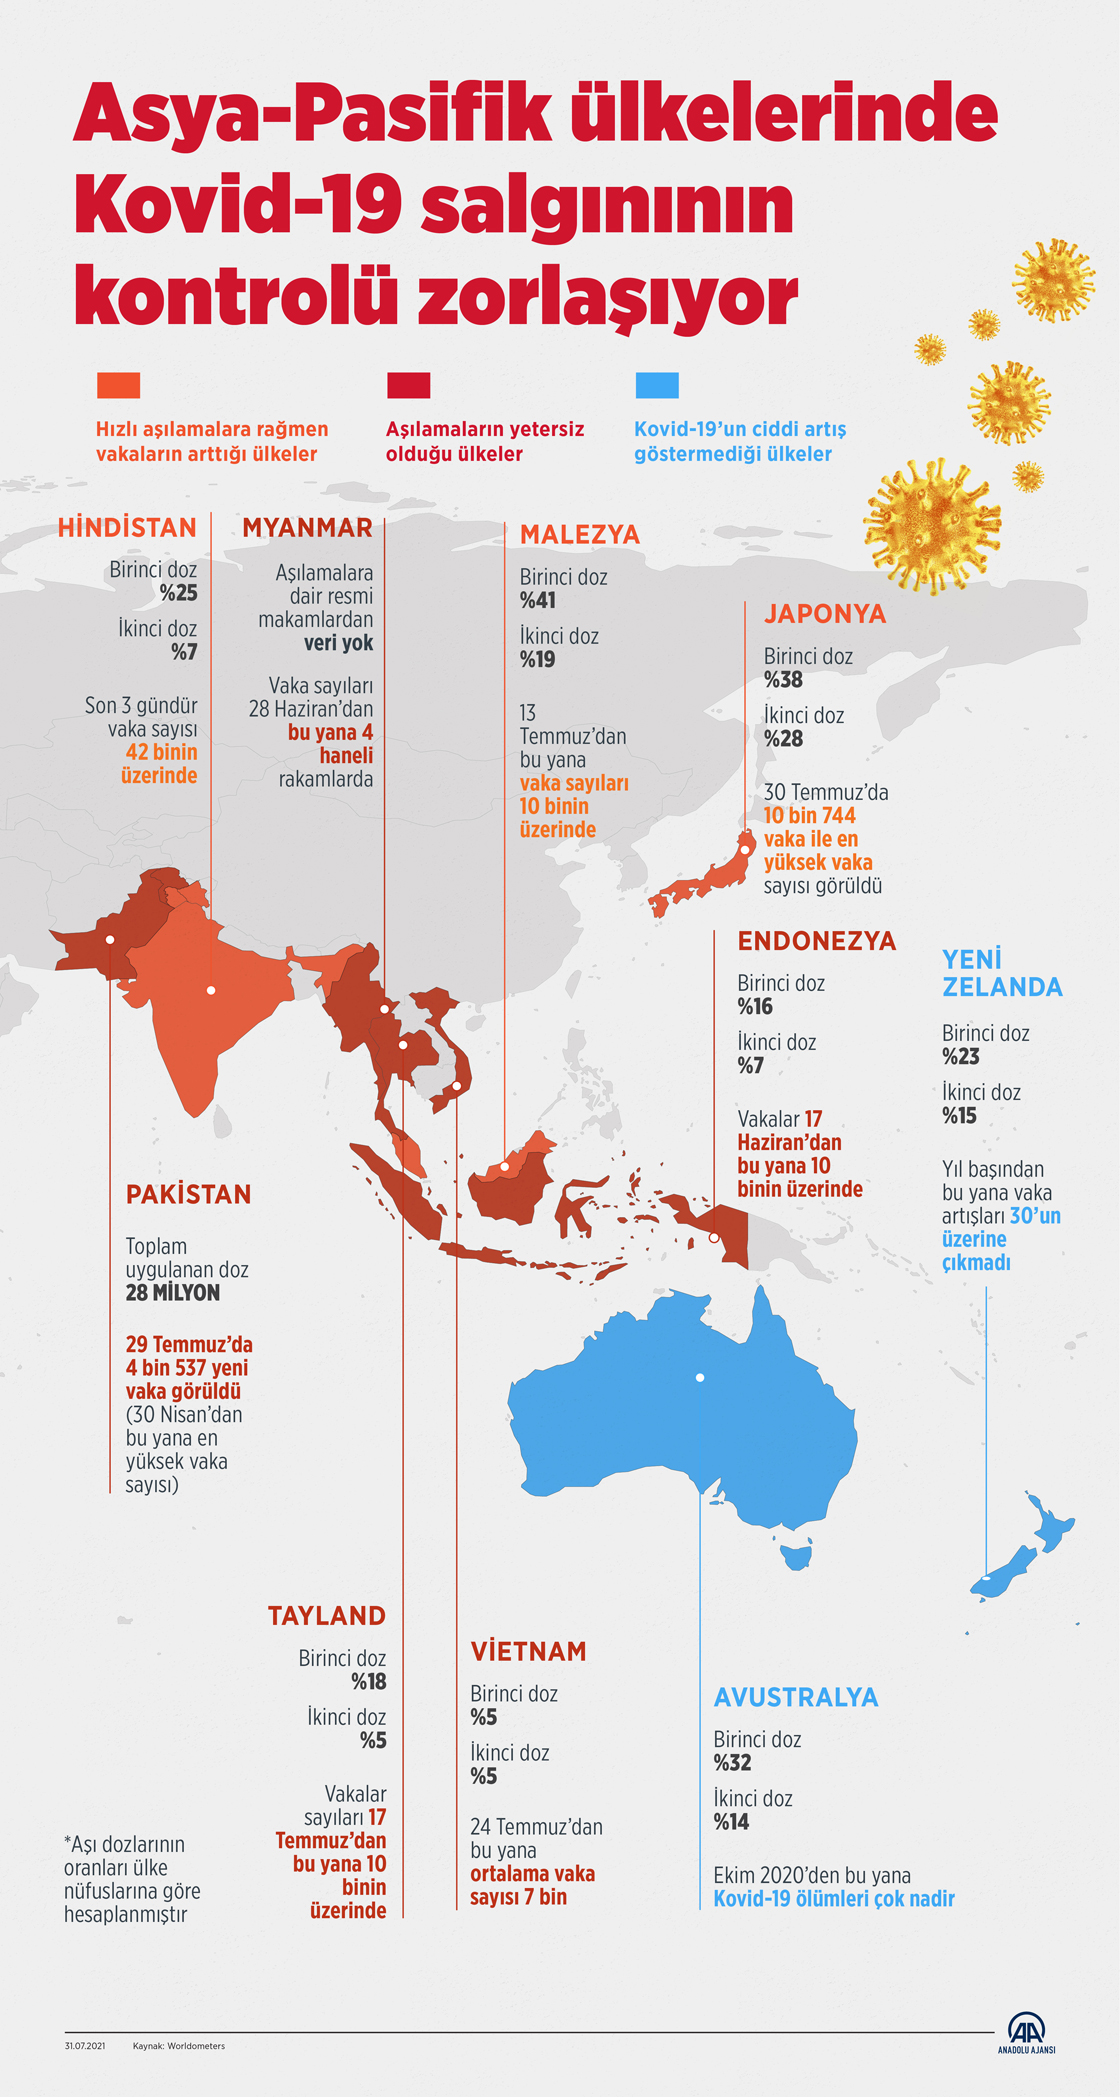 Asya-Pasifik ülkelerinde Kovid-19 salgınının kontrolü zorlaşıyor